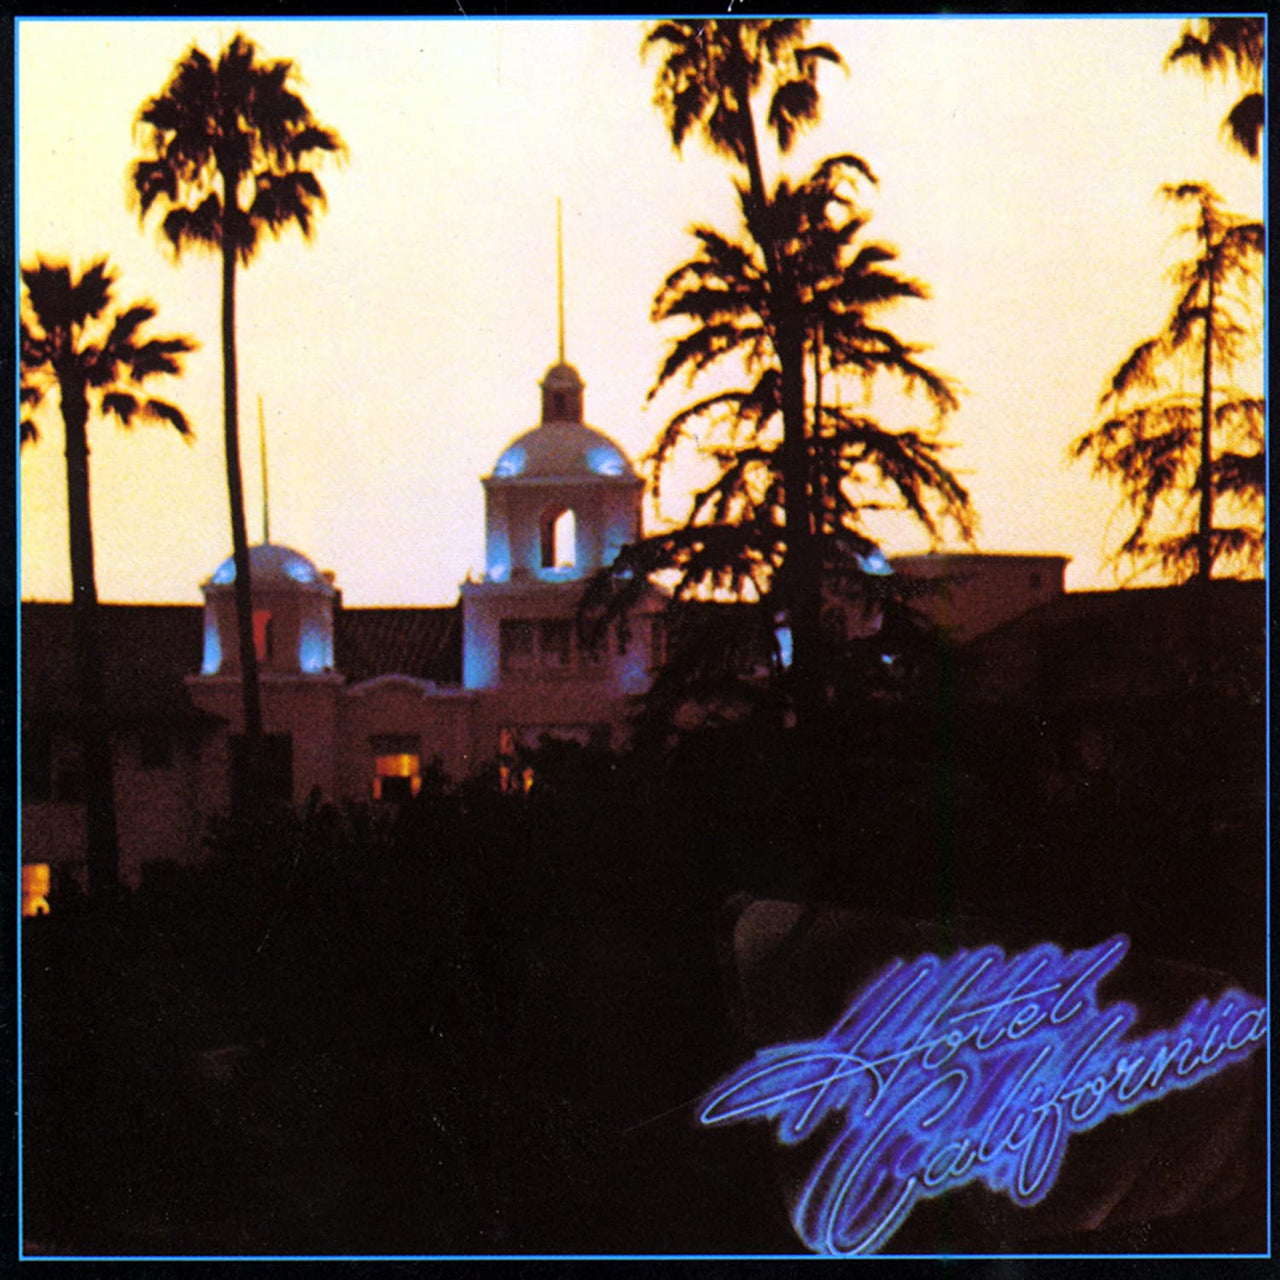 Eagles : Hotel California